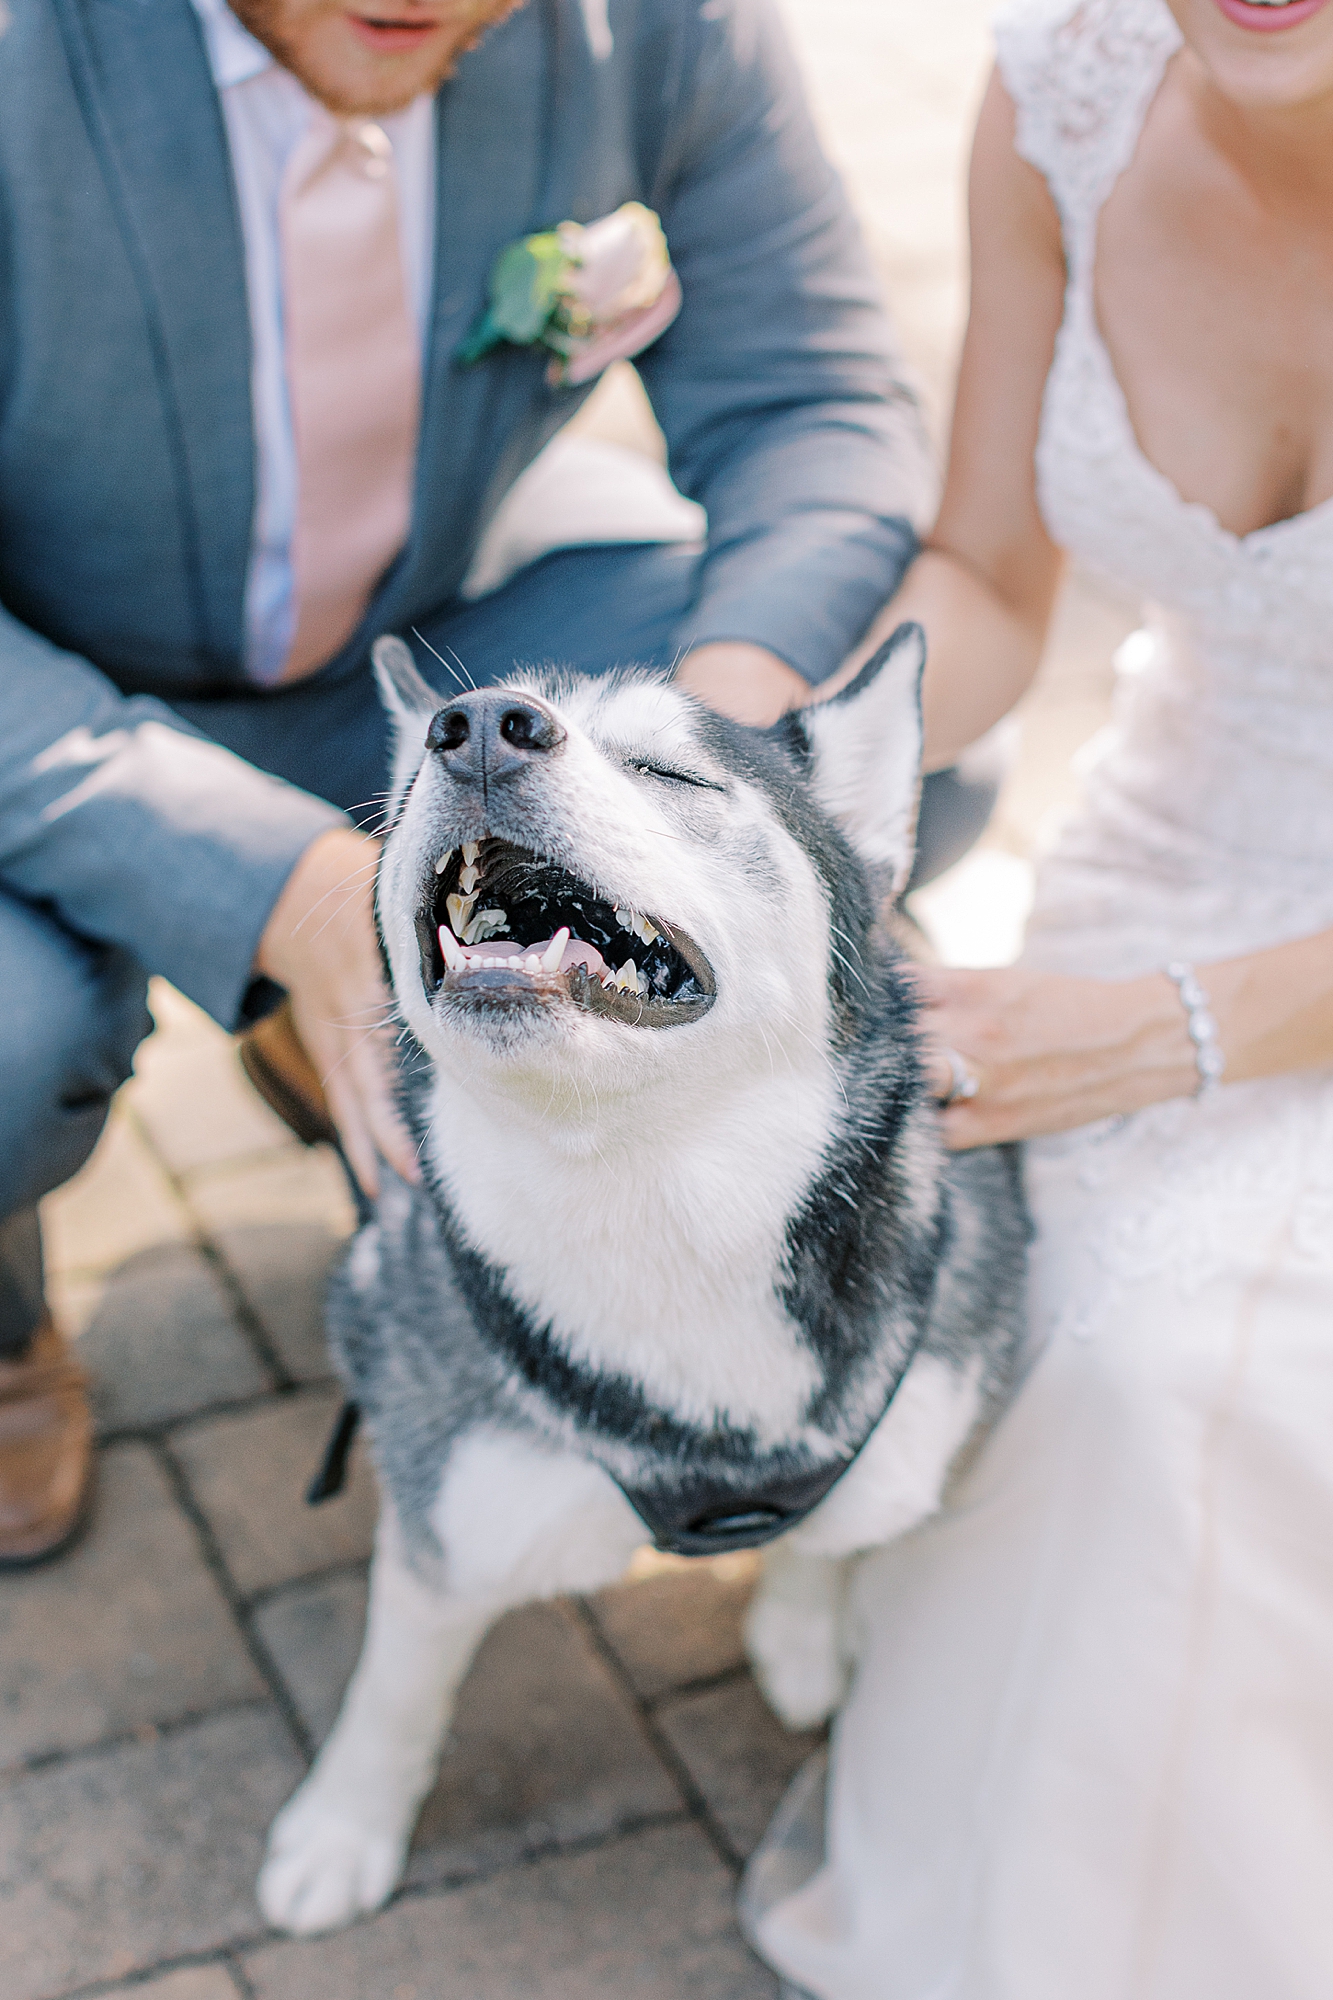 Dog smiling at wedding.